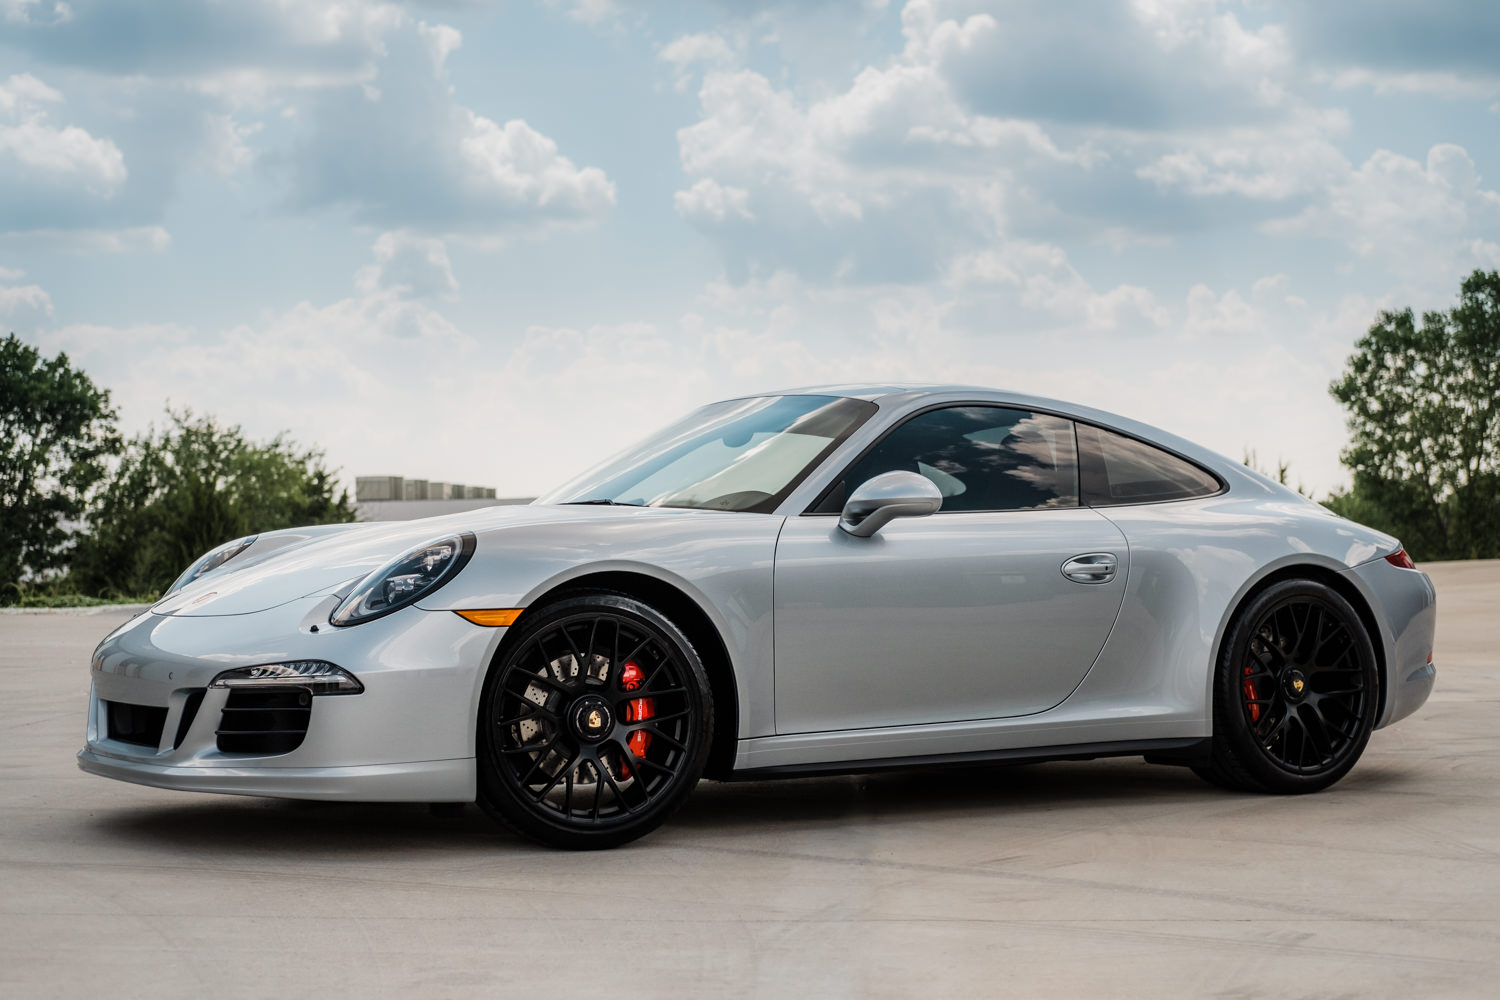 Porsche 911 - Porsche - Wichita Clear Bra - XPEL - XPEL Ultimate - Ceramic Pro - Ceramic Coating - Car Detailing - Porsche 911 GTS-187.jpg